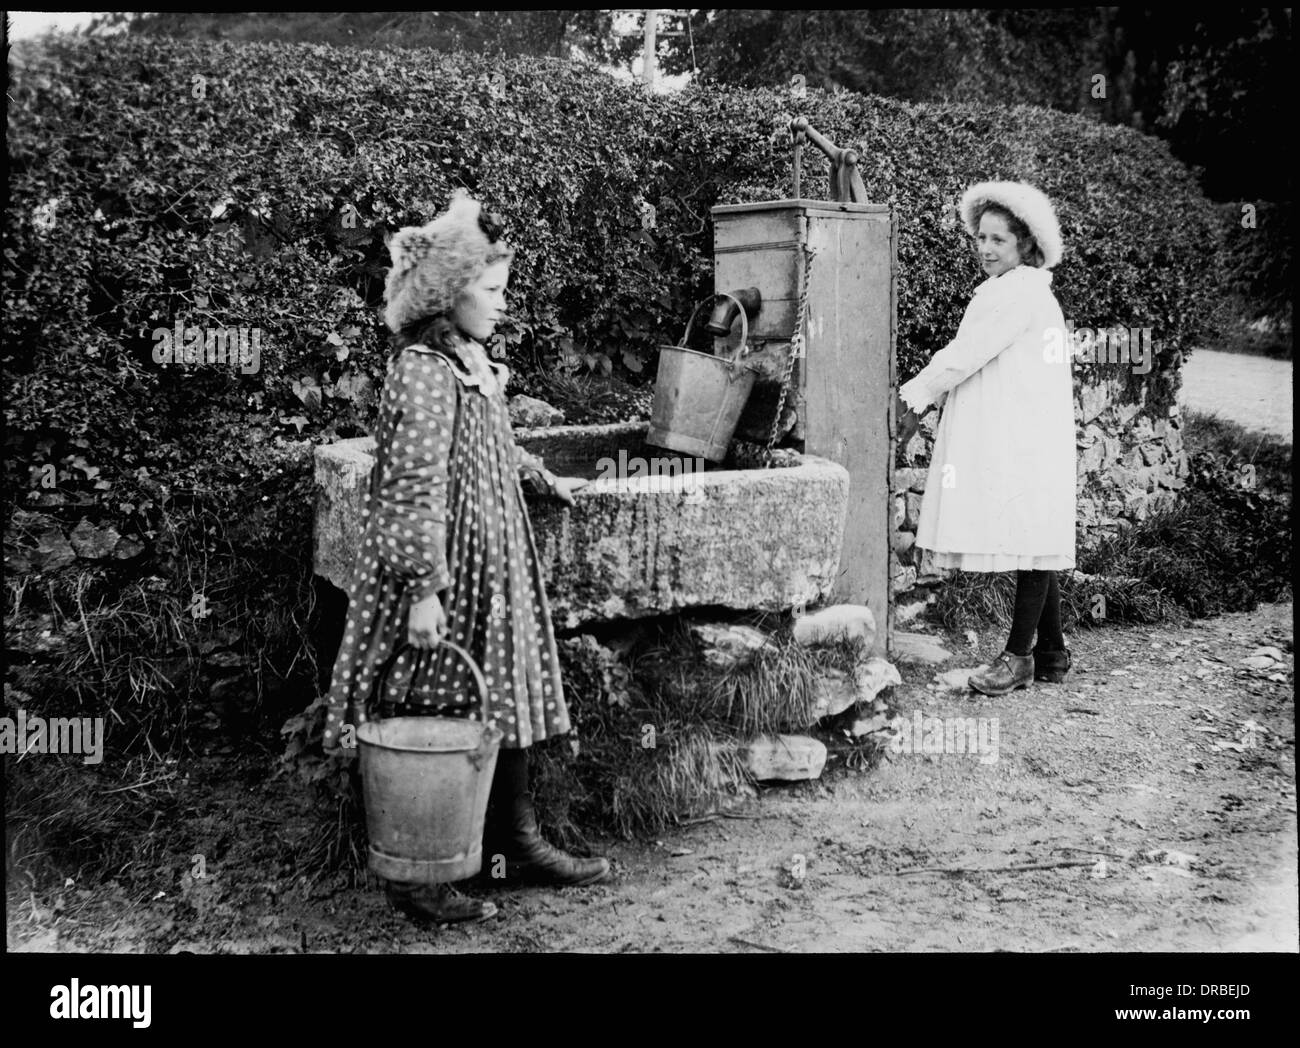 Porträt von zwei Mädchen an der Dorf-Wasserpumpe. Laterne Objektträger ein Foto aufgenommen im Jahre 1905. Beschriftete "Familie Thompson an Pumpe". Beetham, Cumbria (dann Westmorland), Lake District, England. Stockfoto